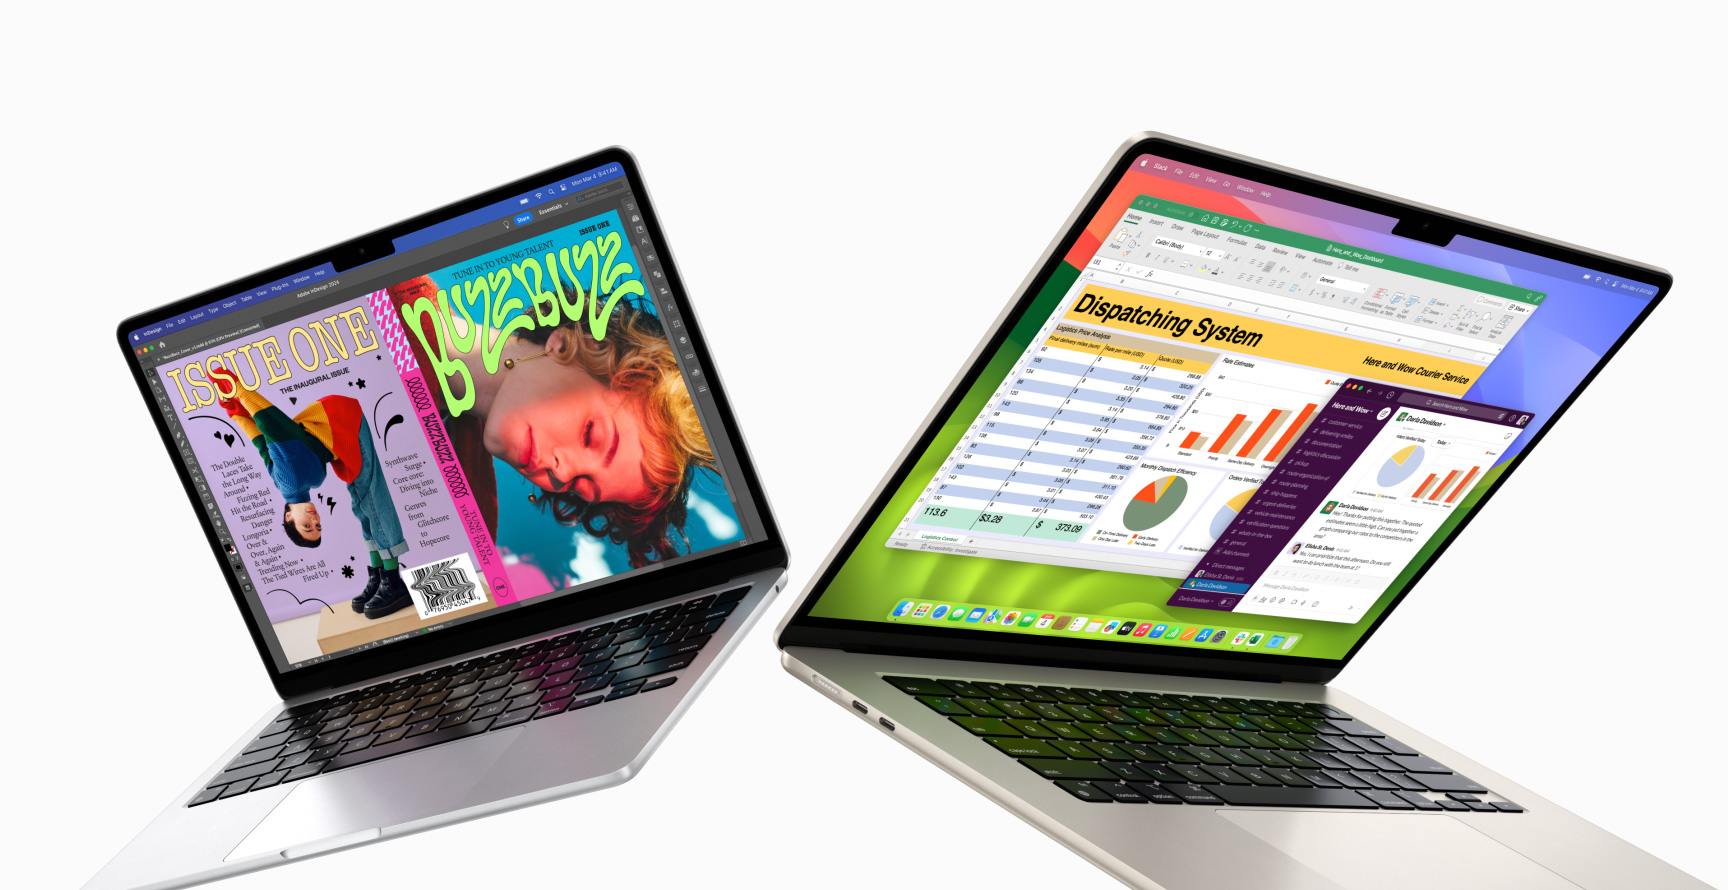 MacBook Air 13 inci di sebelah kiri dan MacBook Air 15 inci di sebelah kanan. Keduanya terbuka sebagian. Layar 13 inci menampilkan sampul majalah penuh warna yang dibuat dengan In Design. Layar 15 inci menampilkan Microsoft Excel dan Slack.